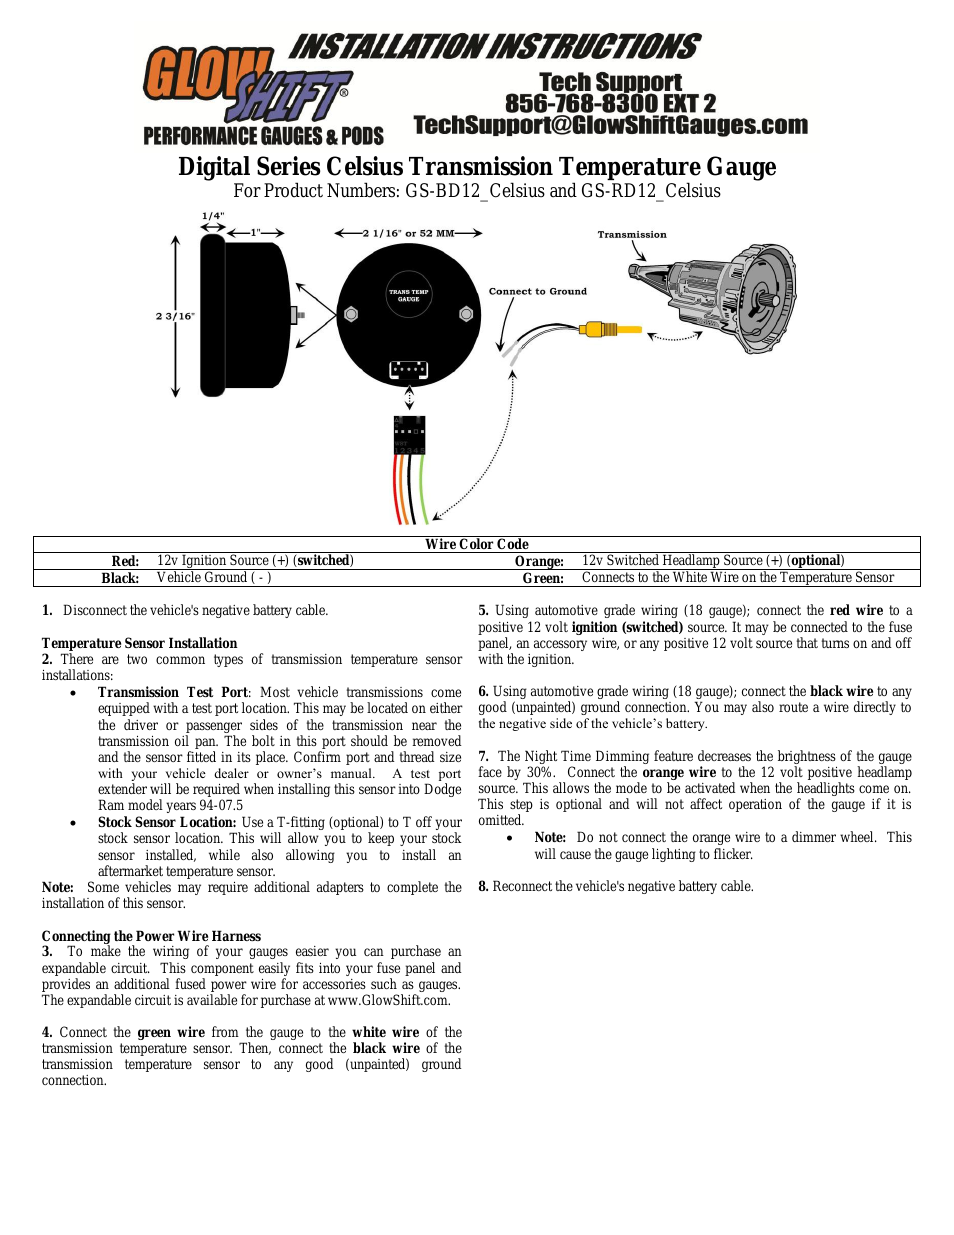 Celsius Transmission Temperature Gauge